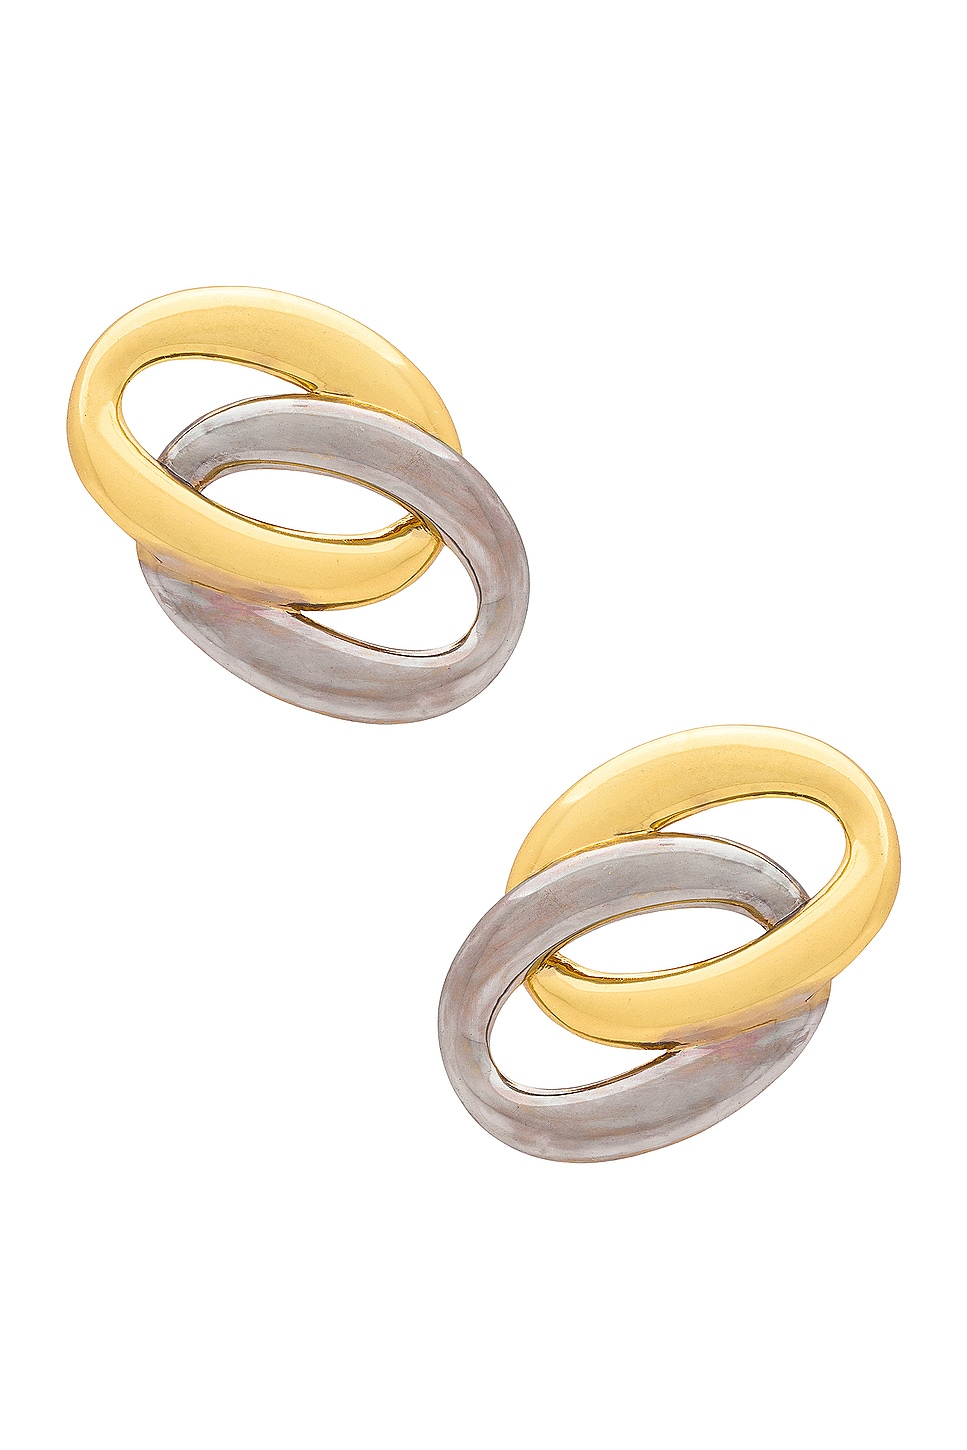 Blair Earrings in Metallic Gold